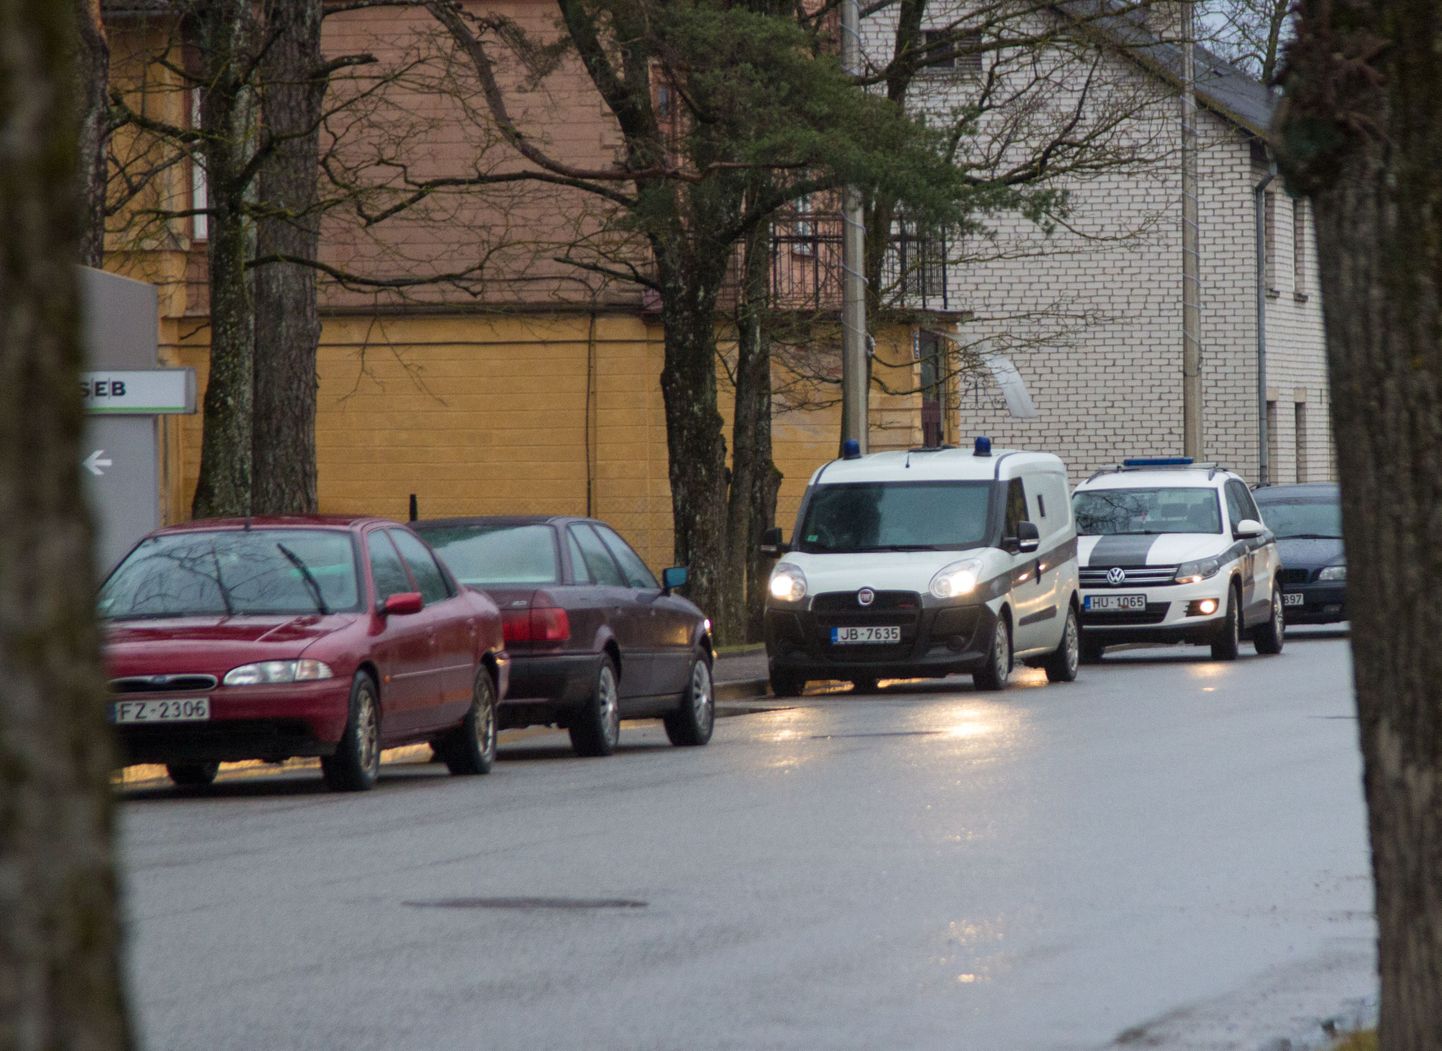 Esmaspäeval võis näha Lätis SEB Valka kontori ees mitme politseiautoga eskorditud sularahaveokit, mille ekipaaž relvastatud saatjate toel hoones asuva sularahaautomaadi juures tegutses. Tegemist oli ettevalmistustega eurole üleminekuks.